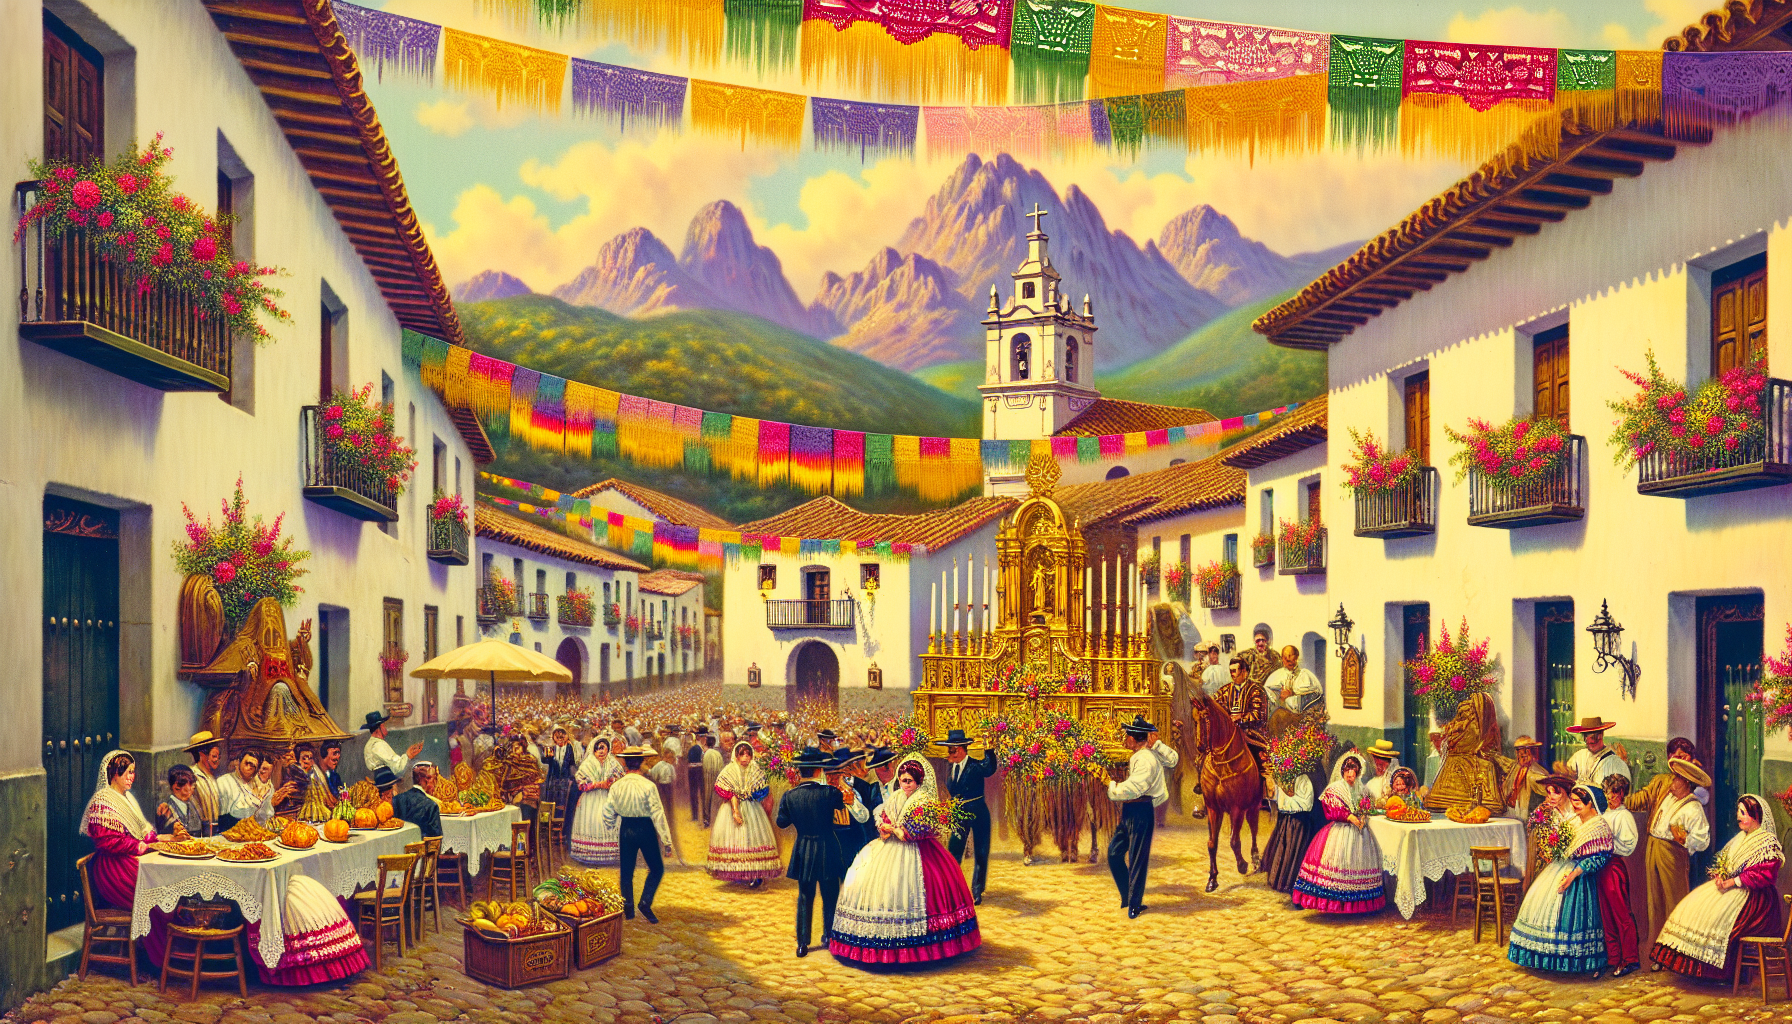 Una pintoresca plaza en un pueblo español durante la Fiesta del Santísimo Sacramento, llena de personas vestidas con trajes tradicionales, coloridas decoraciones de papel, guirnaldas de flores, y una